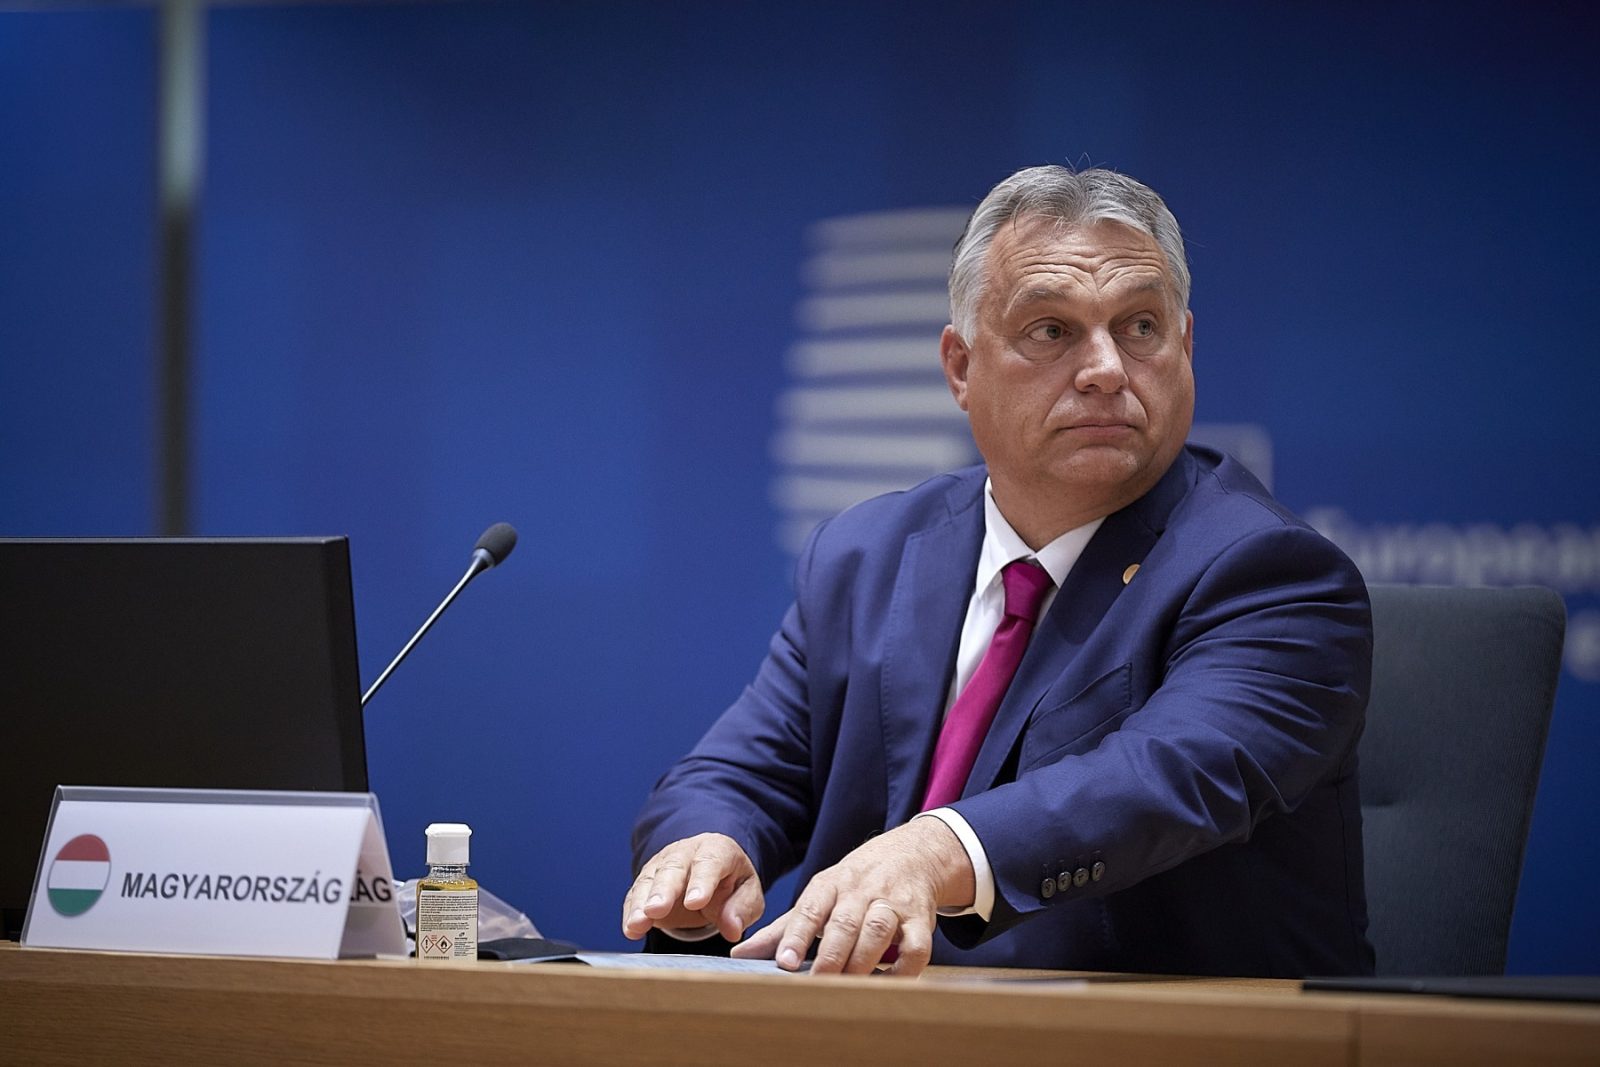 viktor orban, premier ungar, prim-ministru maghiar, conservator, ungaria, bruxelles, consiliul european